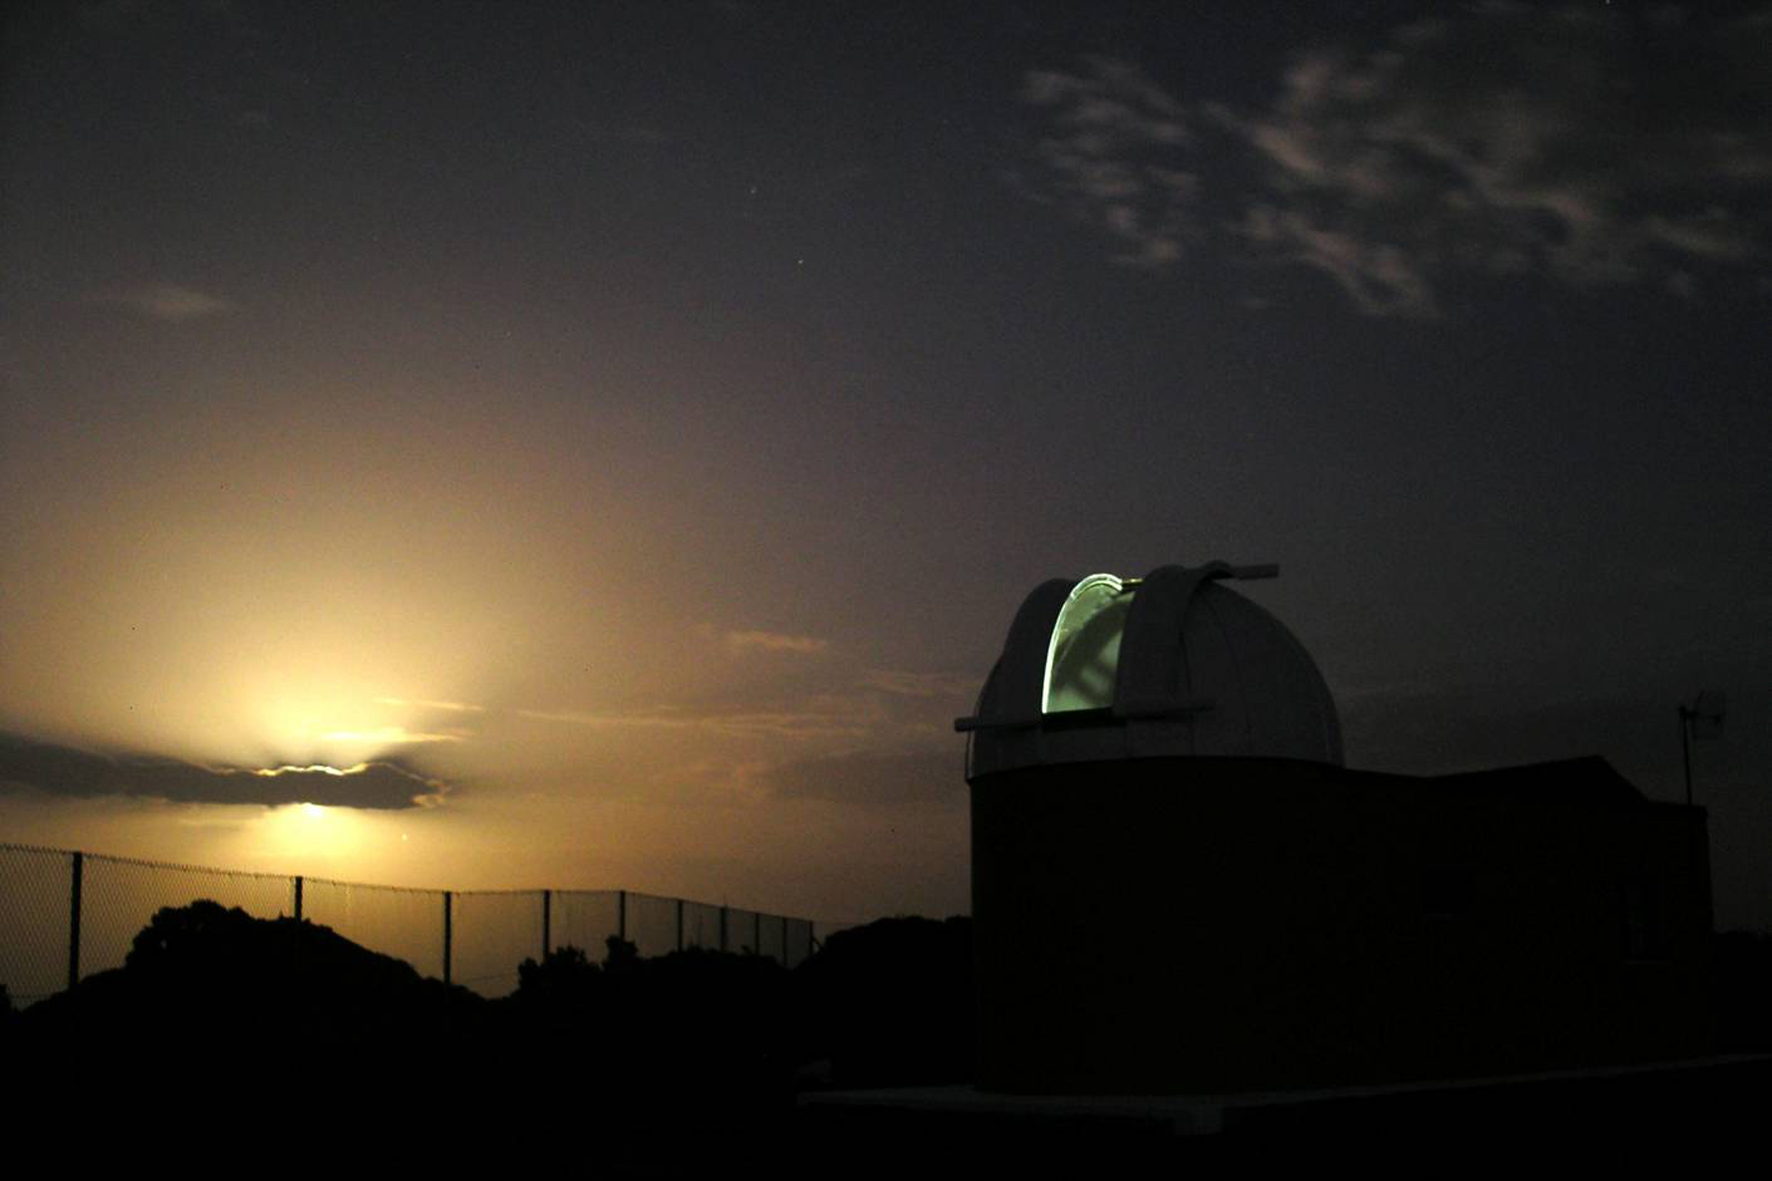 El Grupo Astronómico de El Hierro ofrece este sábado la charla “Galaxias: islas de estrellas” en el el Observatorio de Las Asomadas